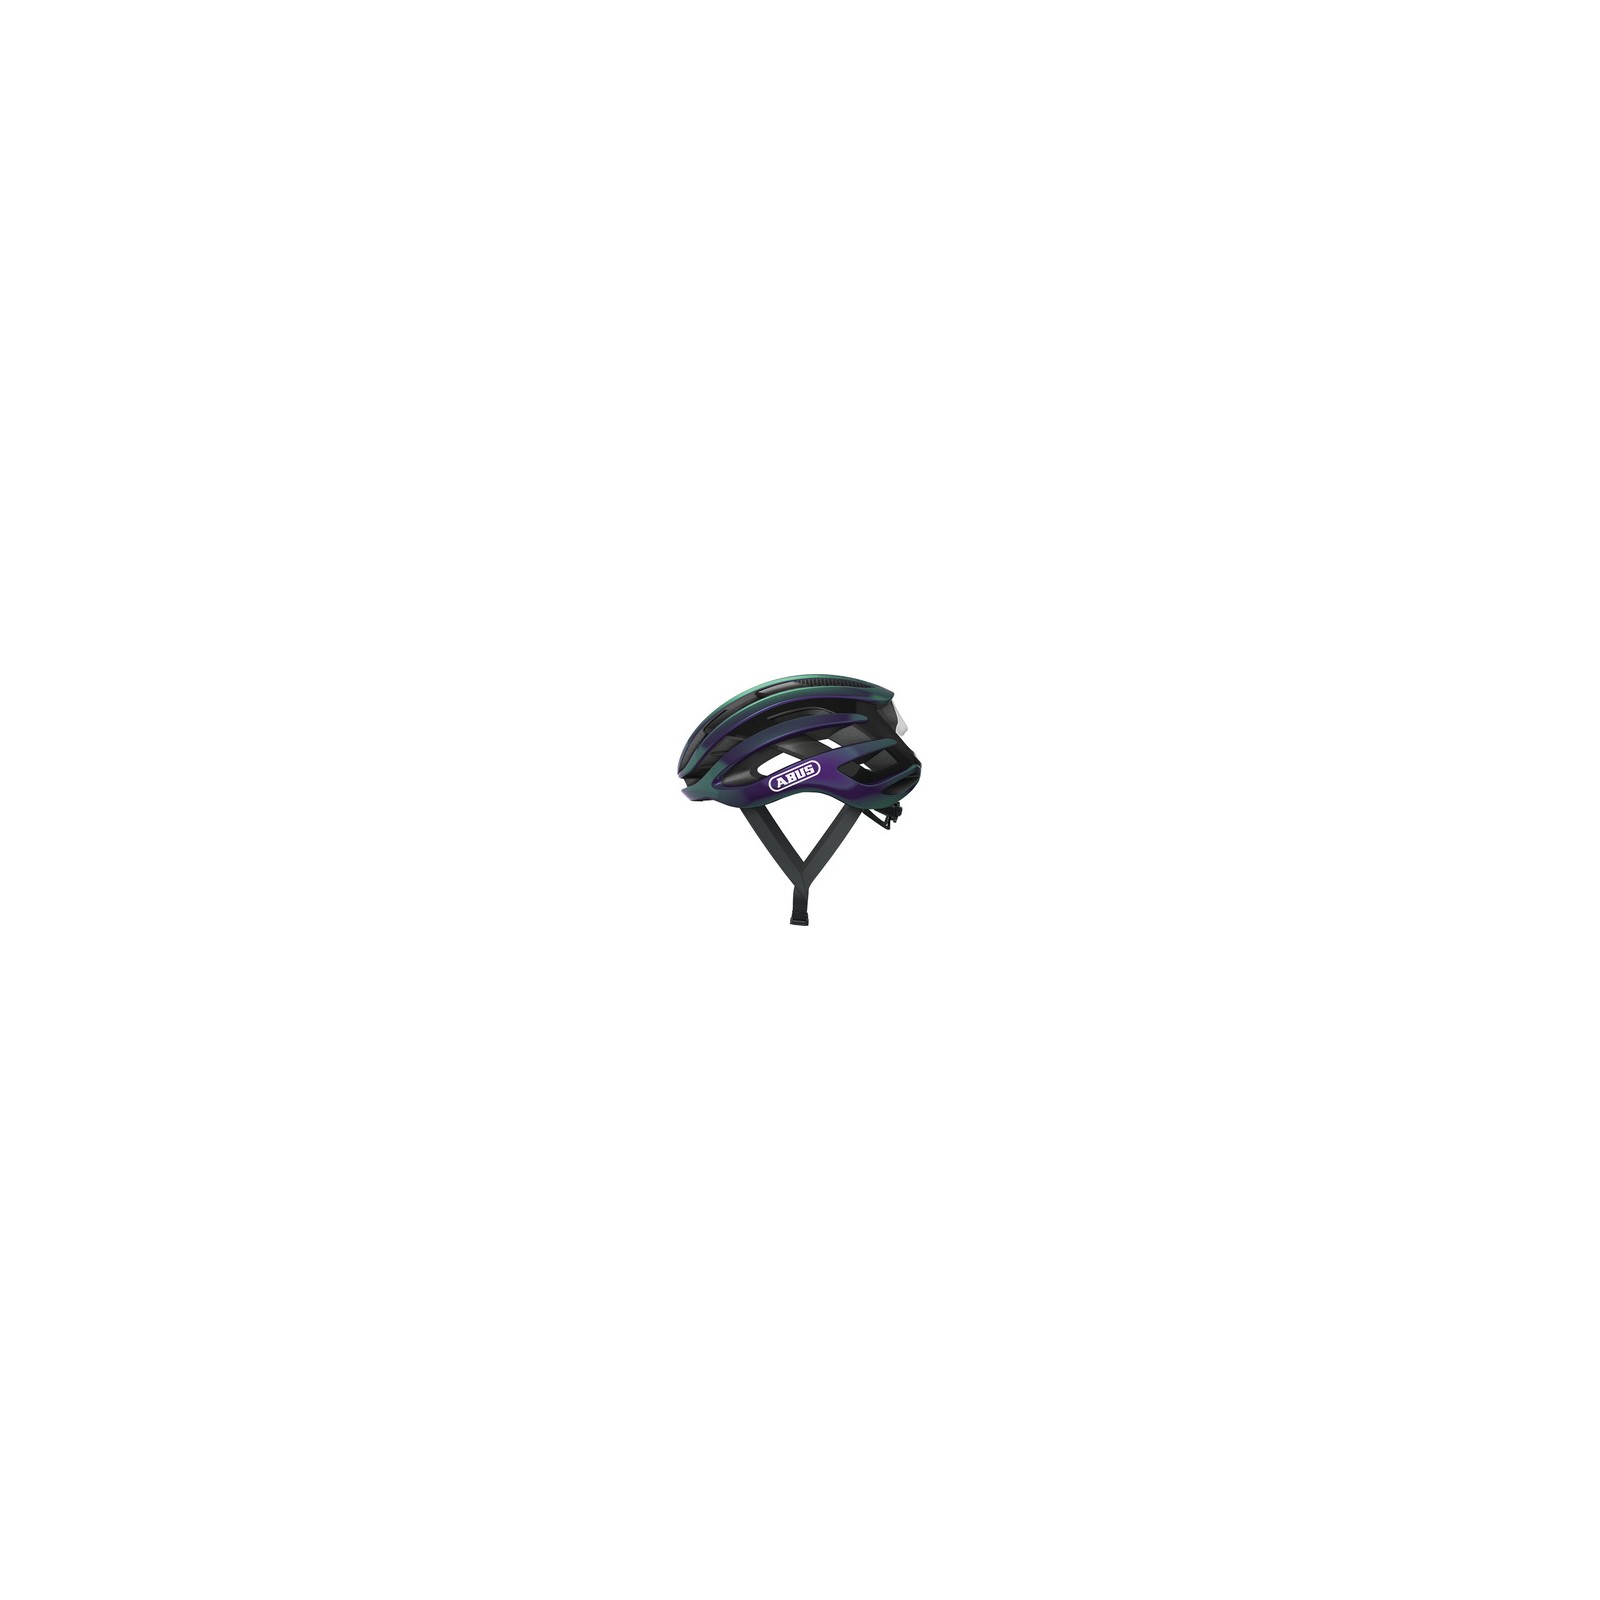 Kask Abus AIRBREAKER (flipflop purple) fioletowy r. M - AB 078640